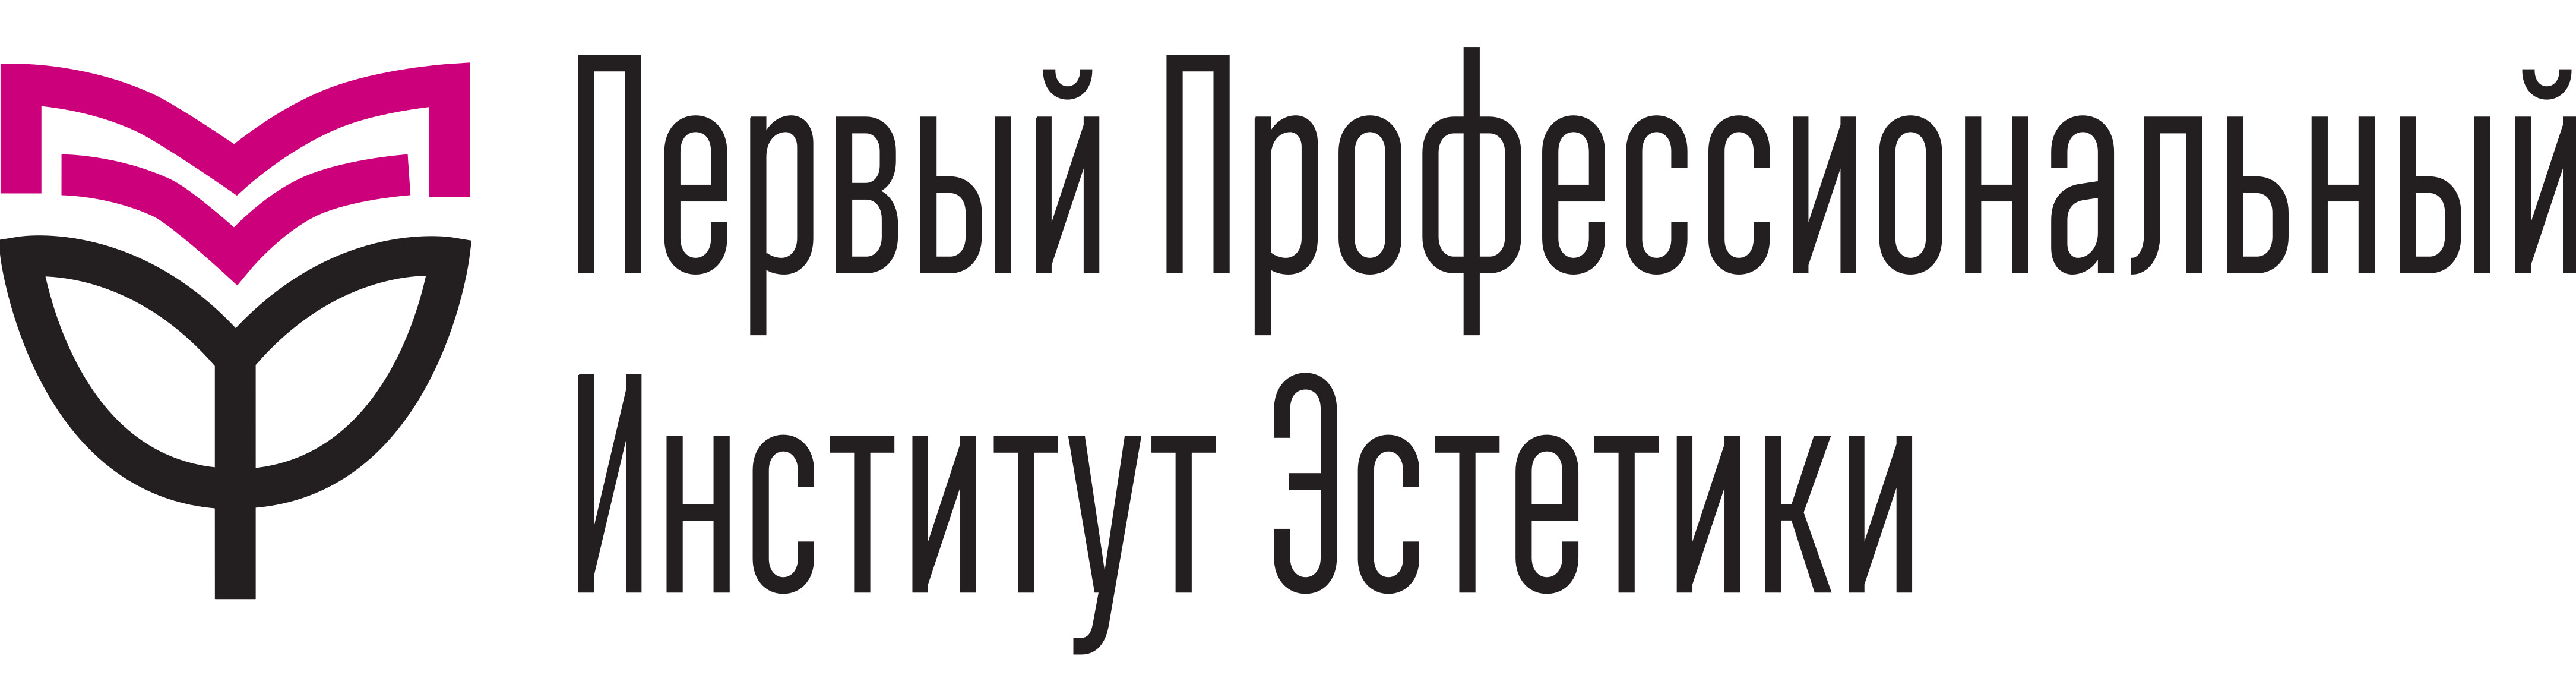 Логотип салона красоты Первый профессиональный институт этики